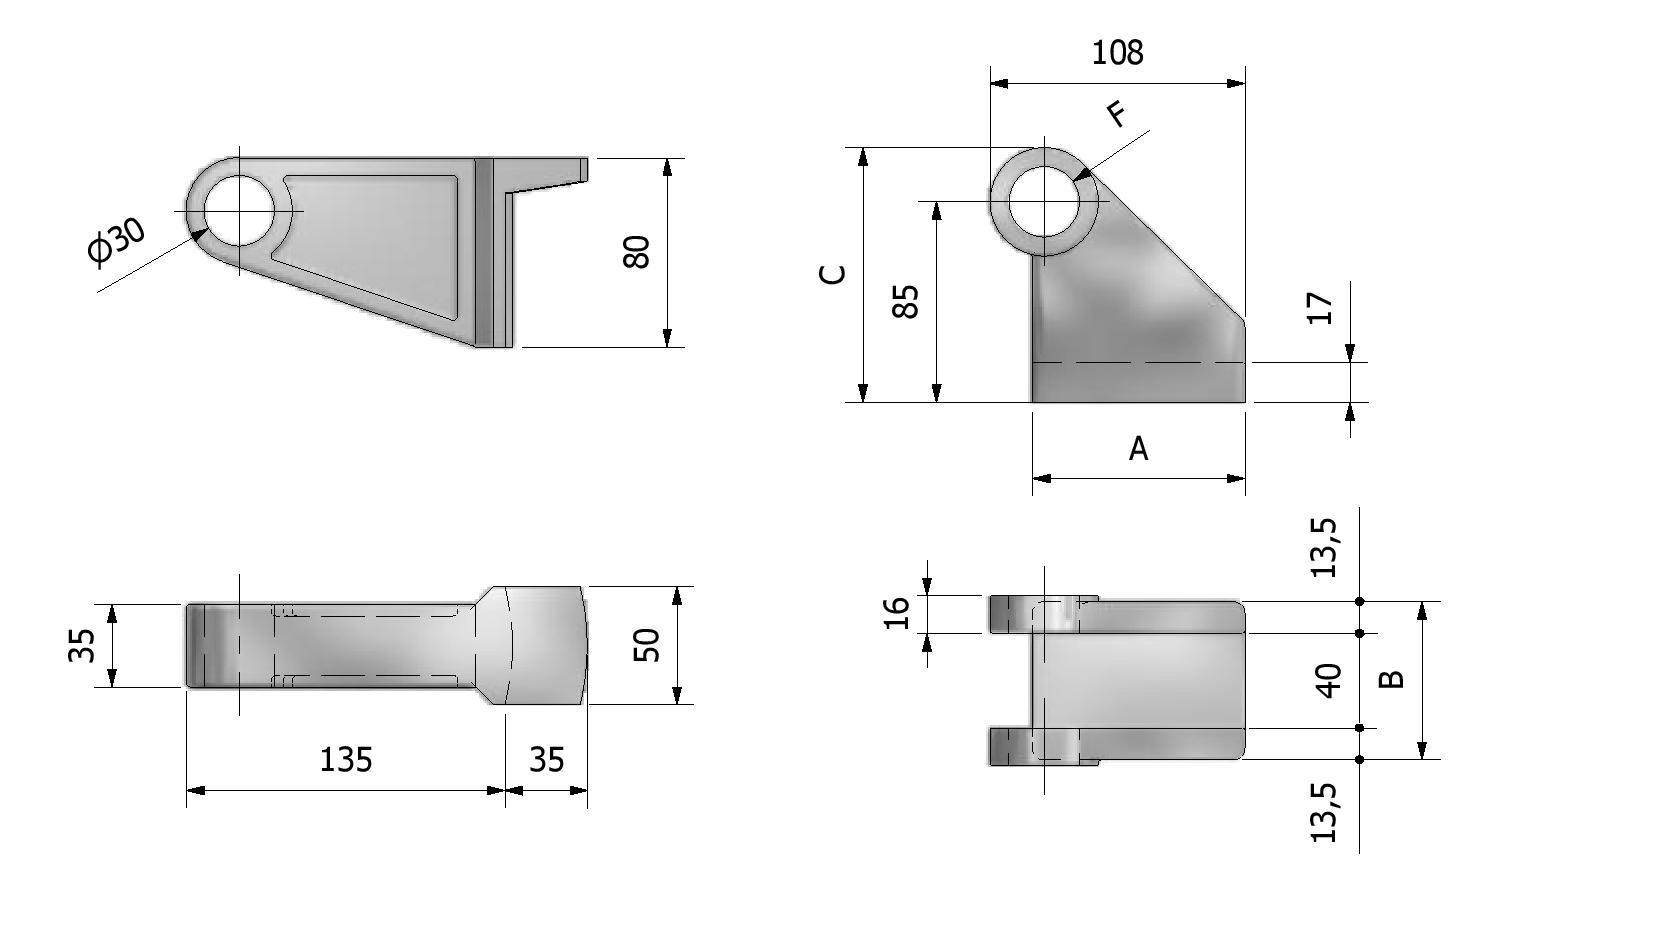 Technische Zeichnung von Scharnier für Kippfahrzeuge, kleines Modell Mit Referenznummer 335810